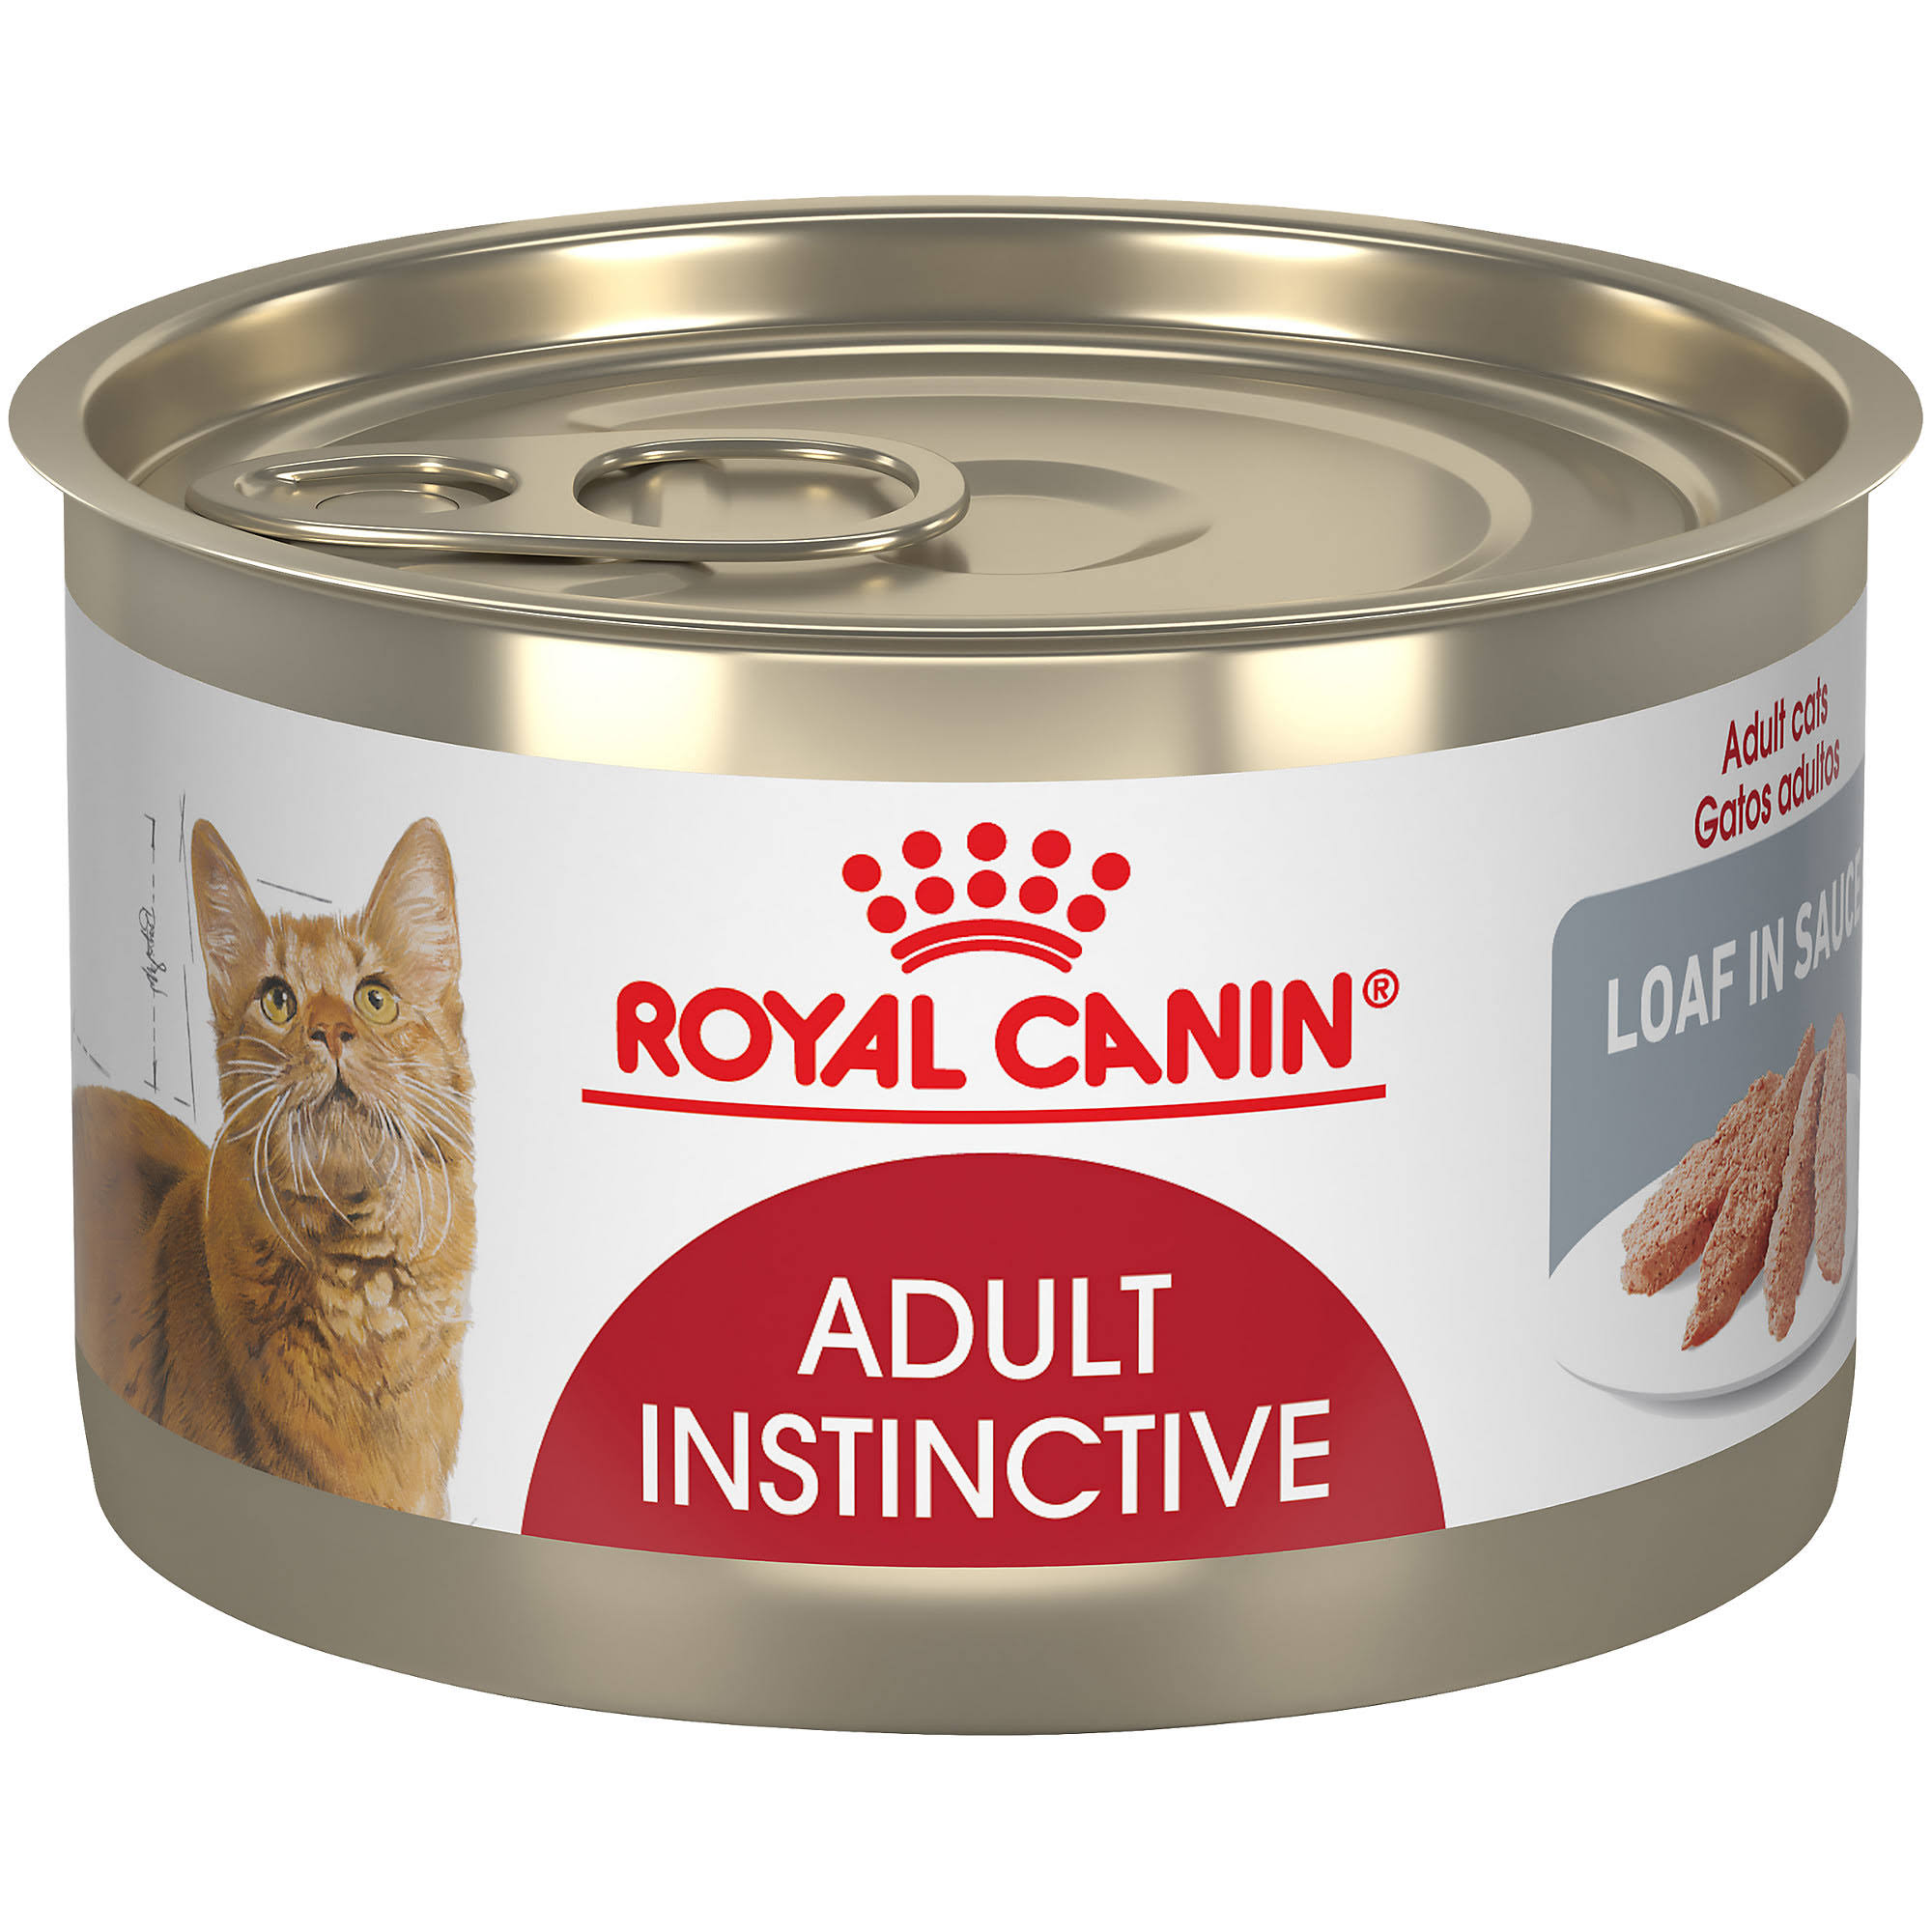 Royal Canin Adult Instinctive Loaf in Sauce Cat Food - 5.1 oz